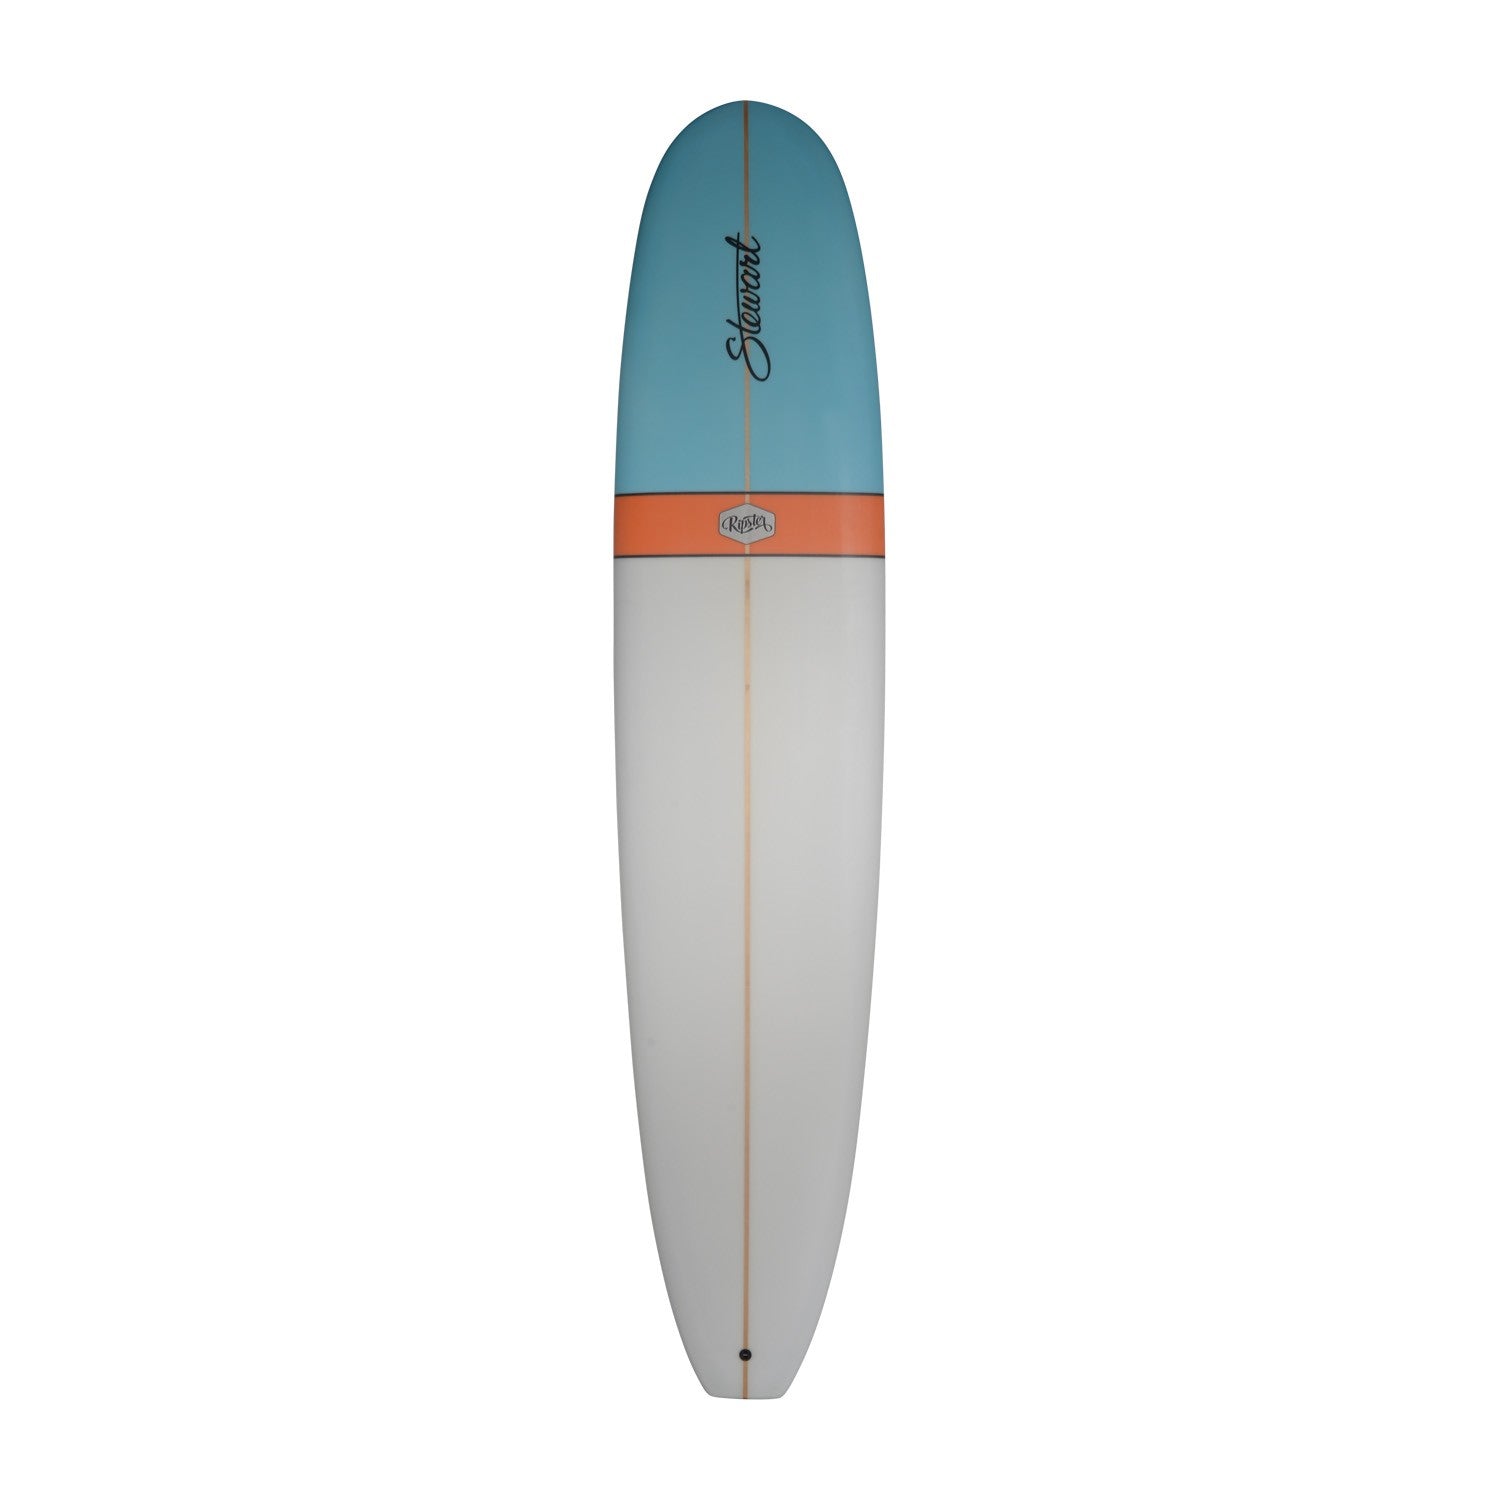 STEWART Surfboards - Ripster 9'0 (PU) - Blue / Orange